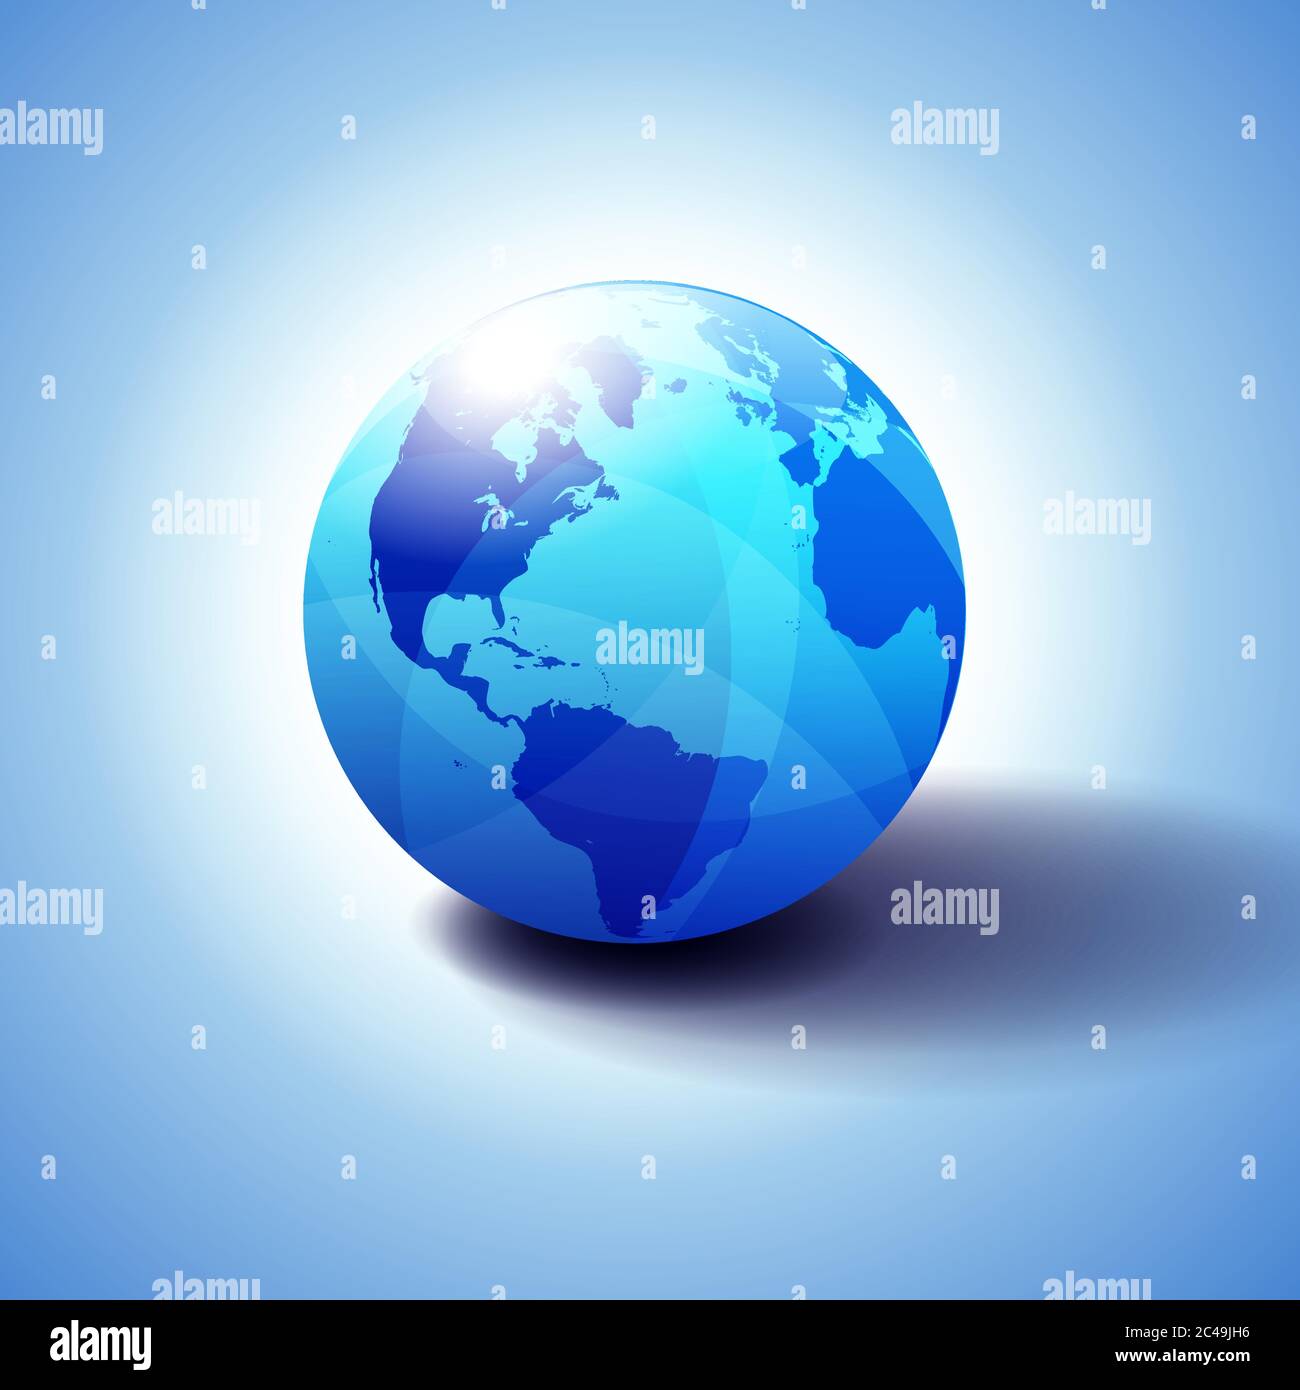 Nord- und Südamerika, Europa, Afrika Global World, Globe Icon 3D-Illustration, glänzende Kugel mit Global Map in subtilen Blues, die einen transp Stock Vektor